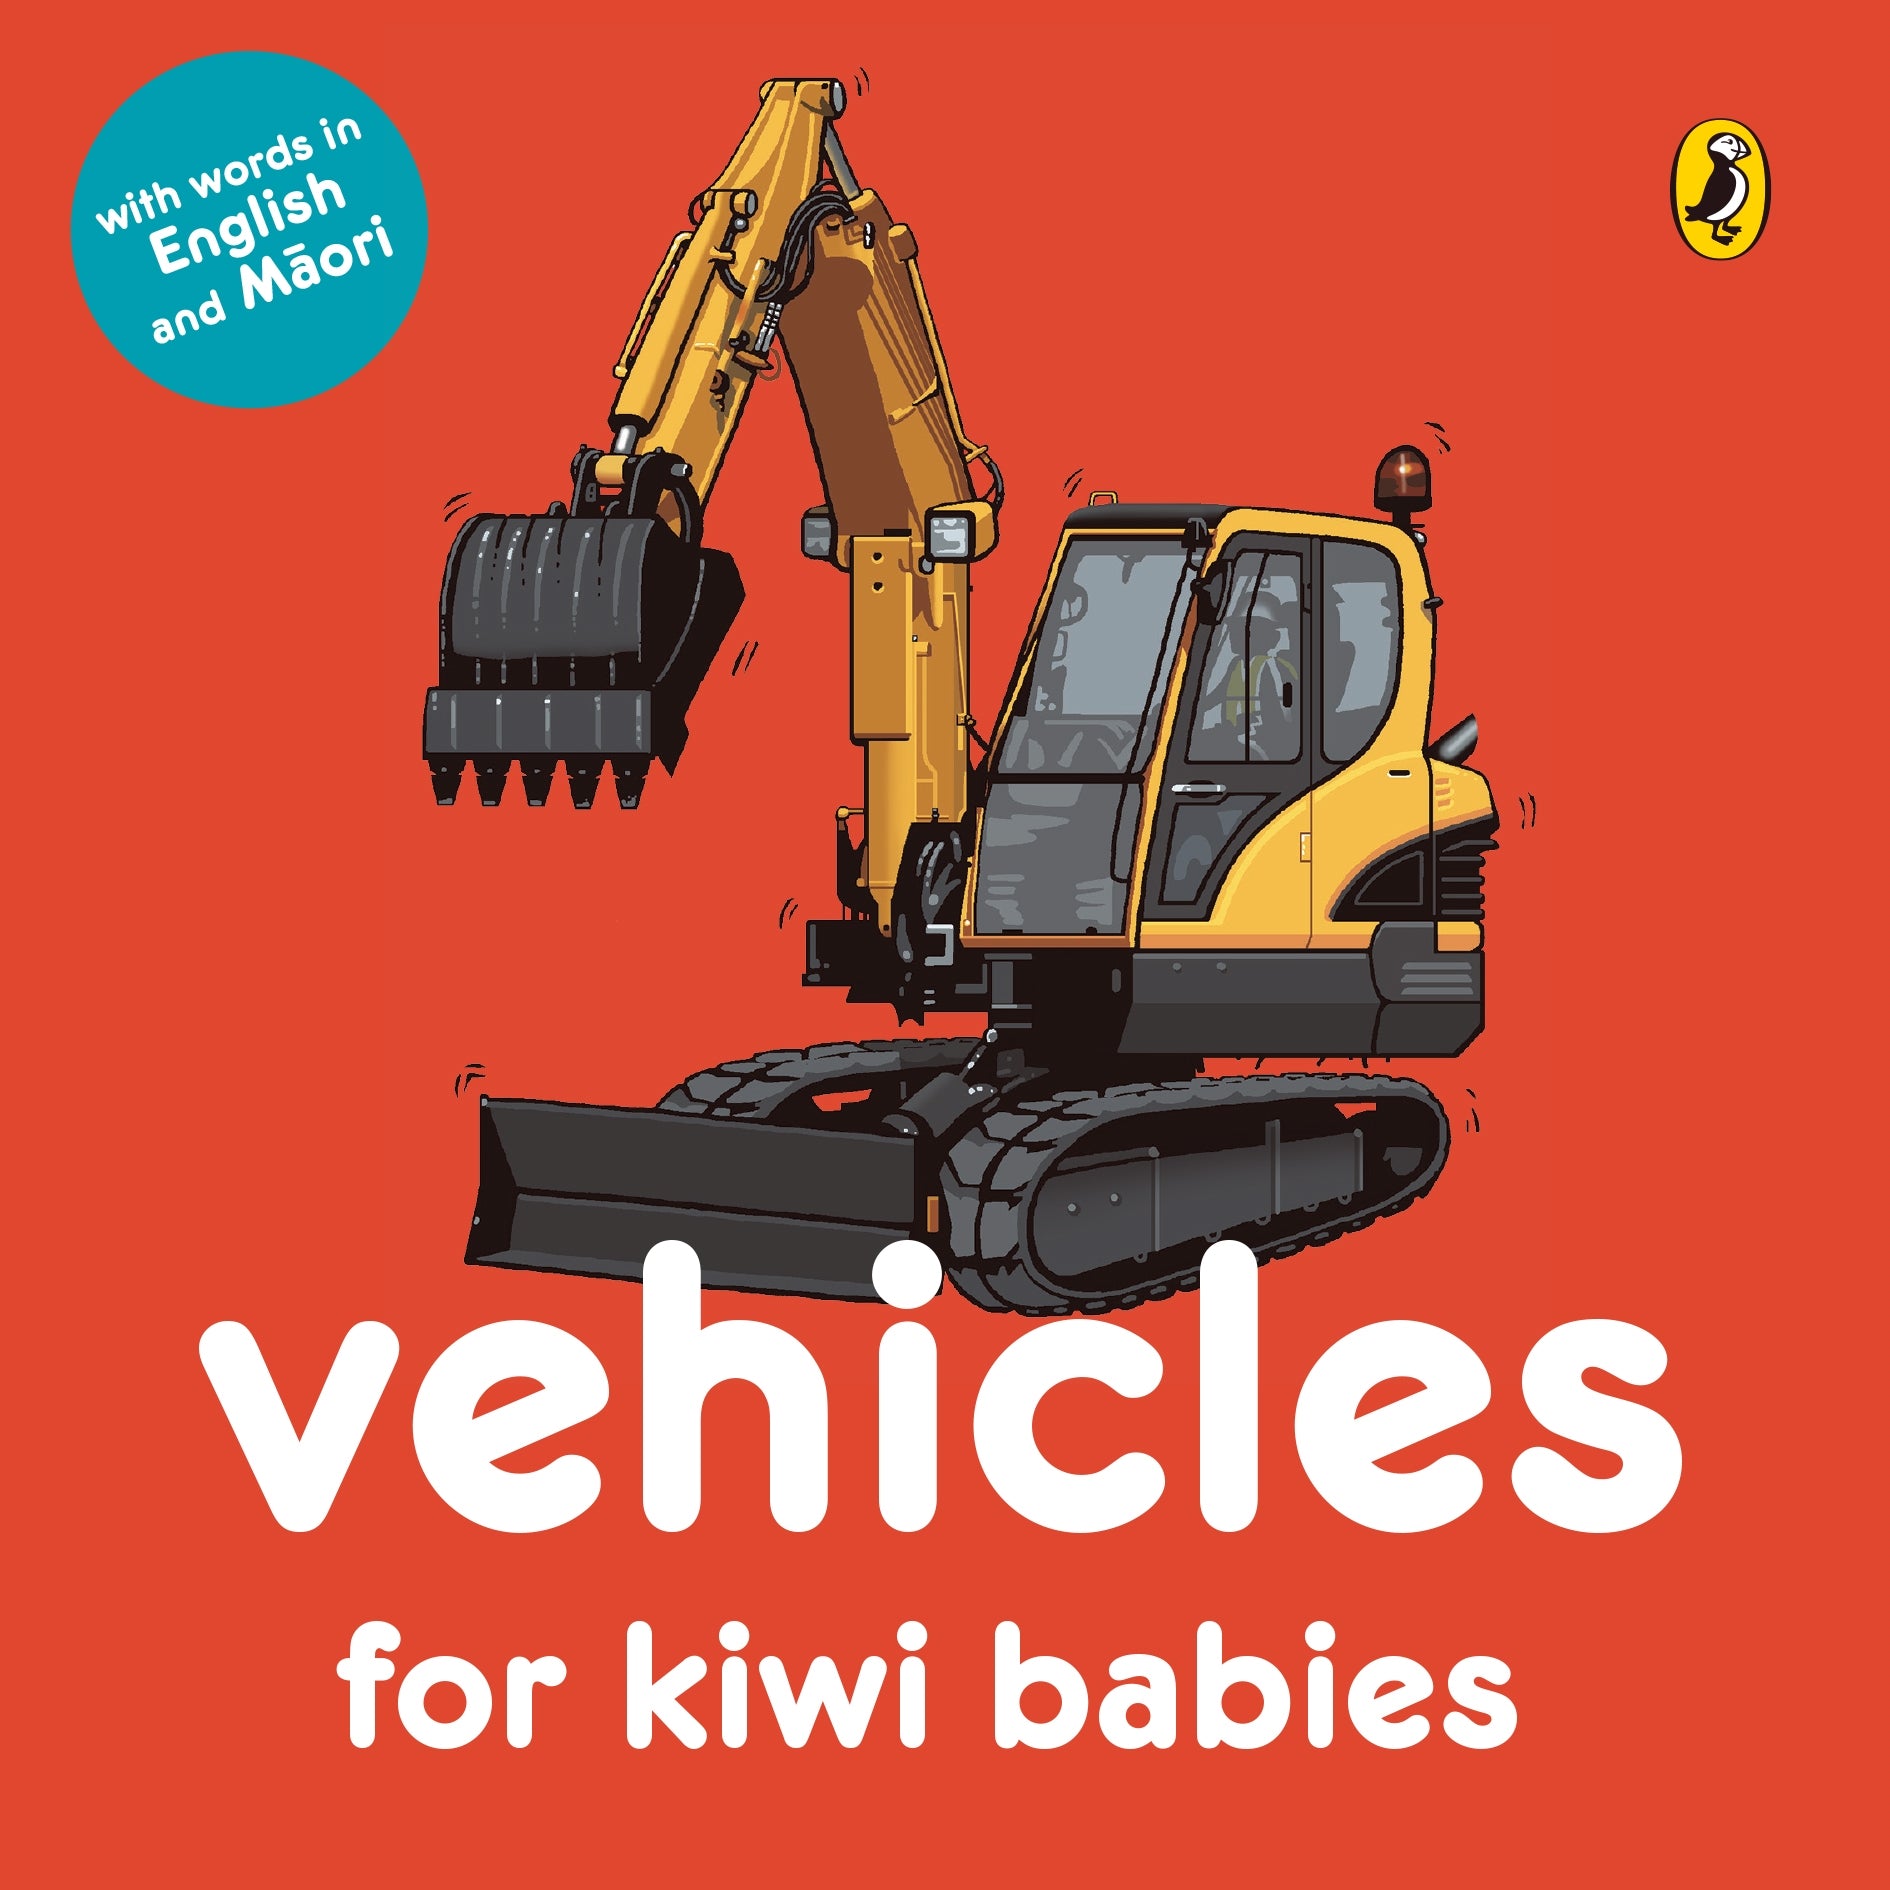 Vehicles for Kiwi Babies in English & Maori